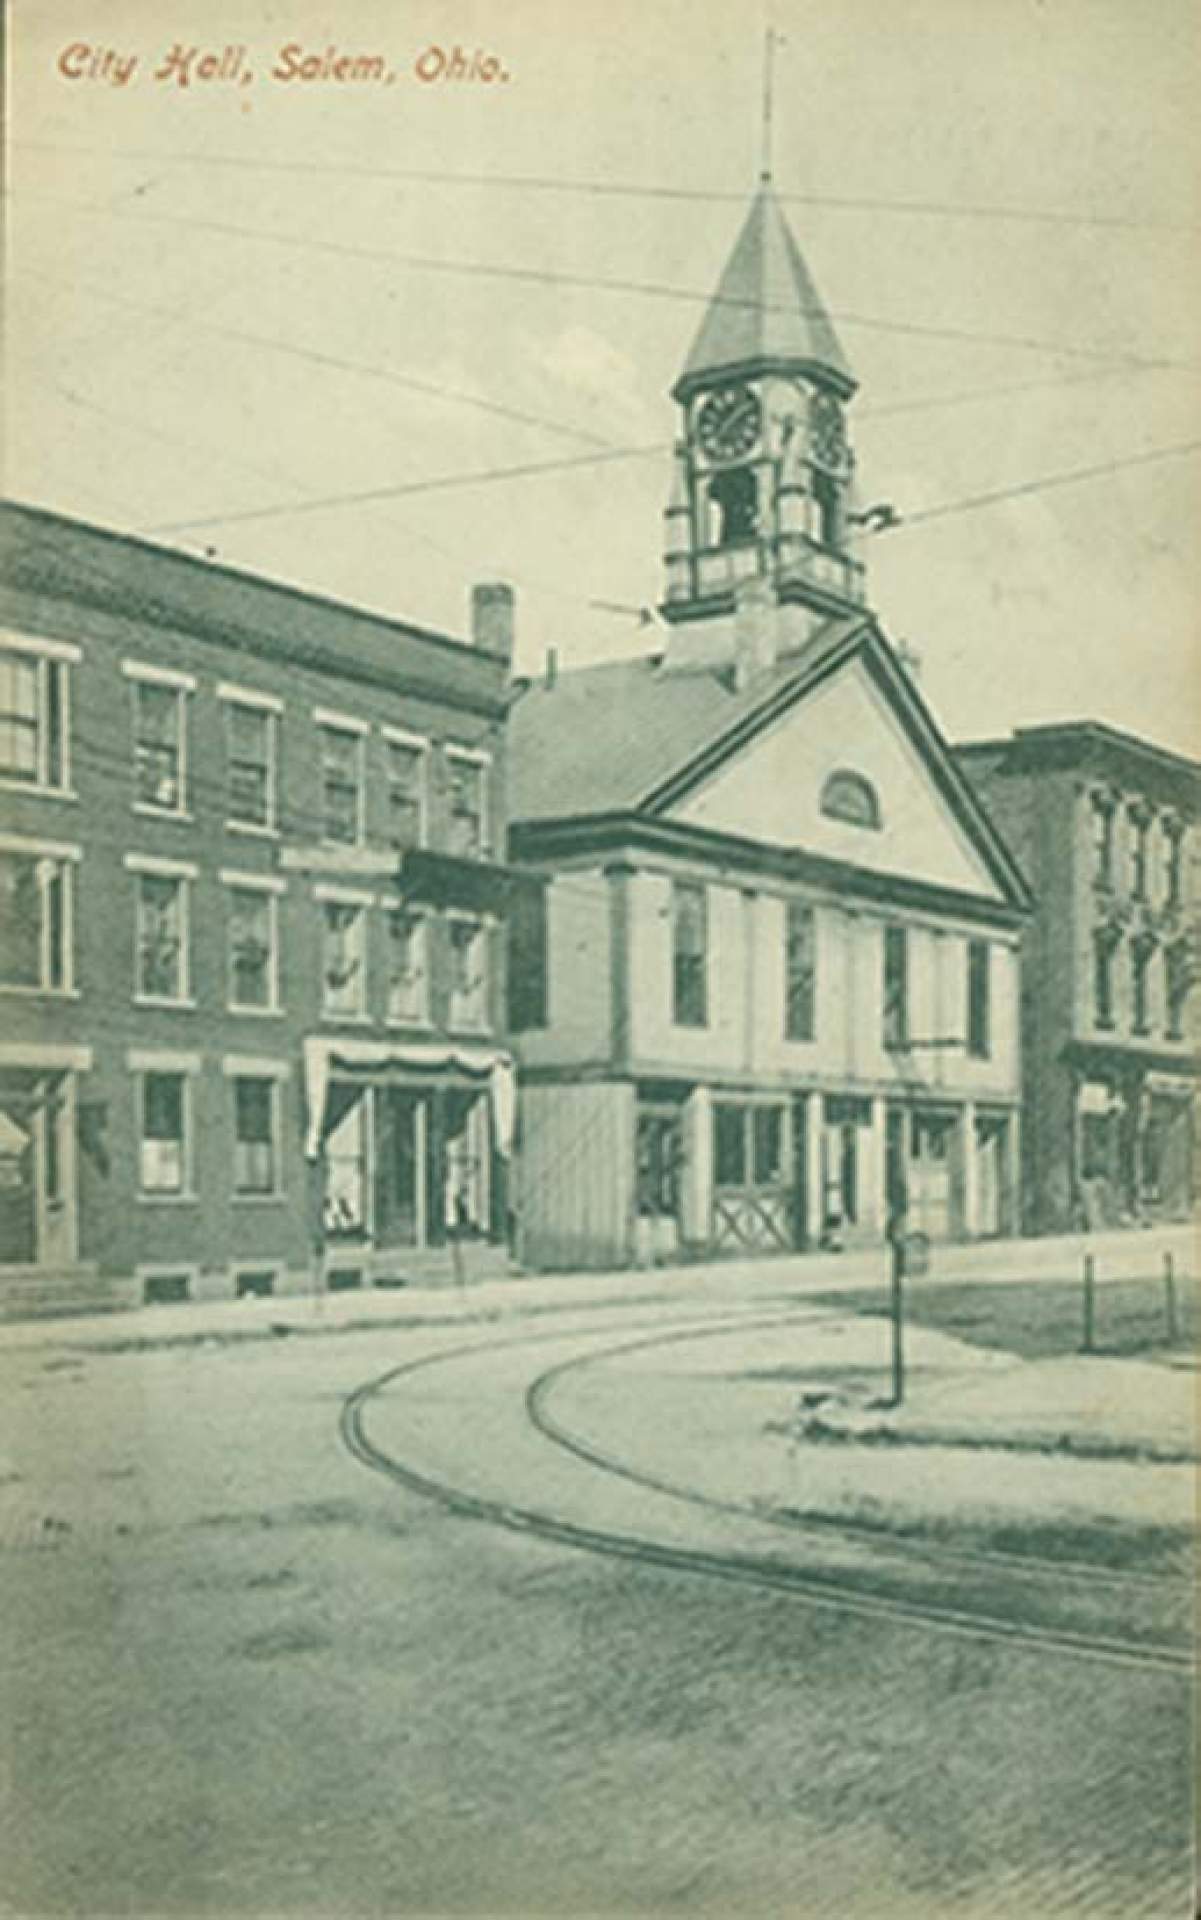 Charles E. Burchfield, <em>Postcard of City Hall, Salem, Ohio sent to Arthur C. Thomas</em>, November 3, 1908